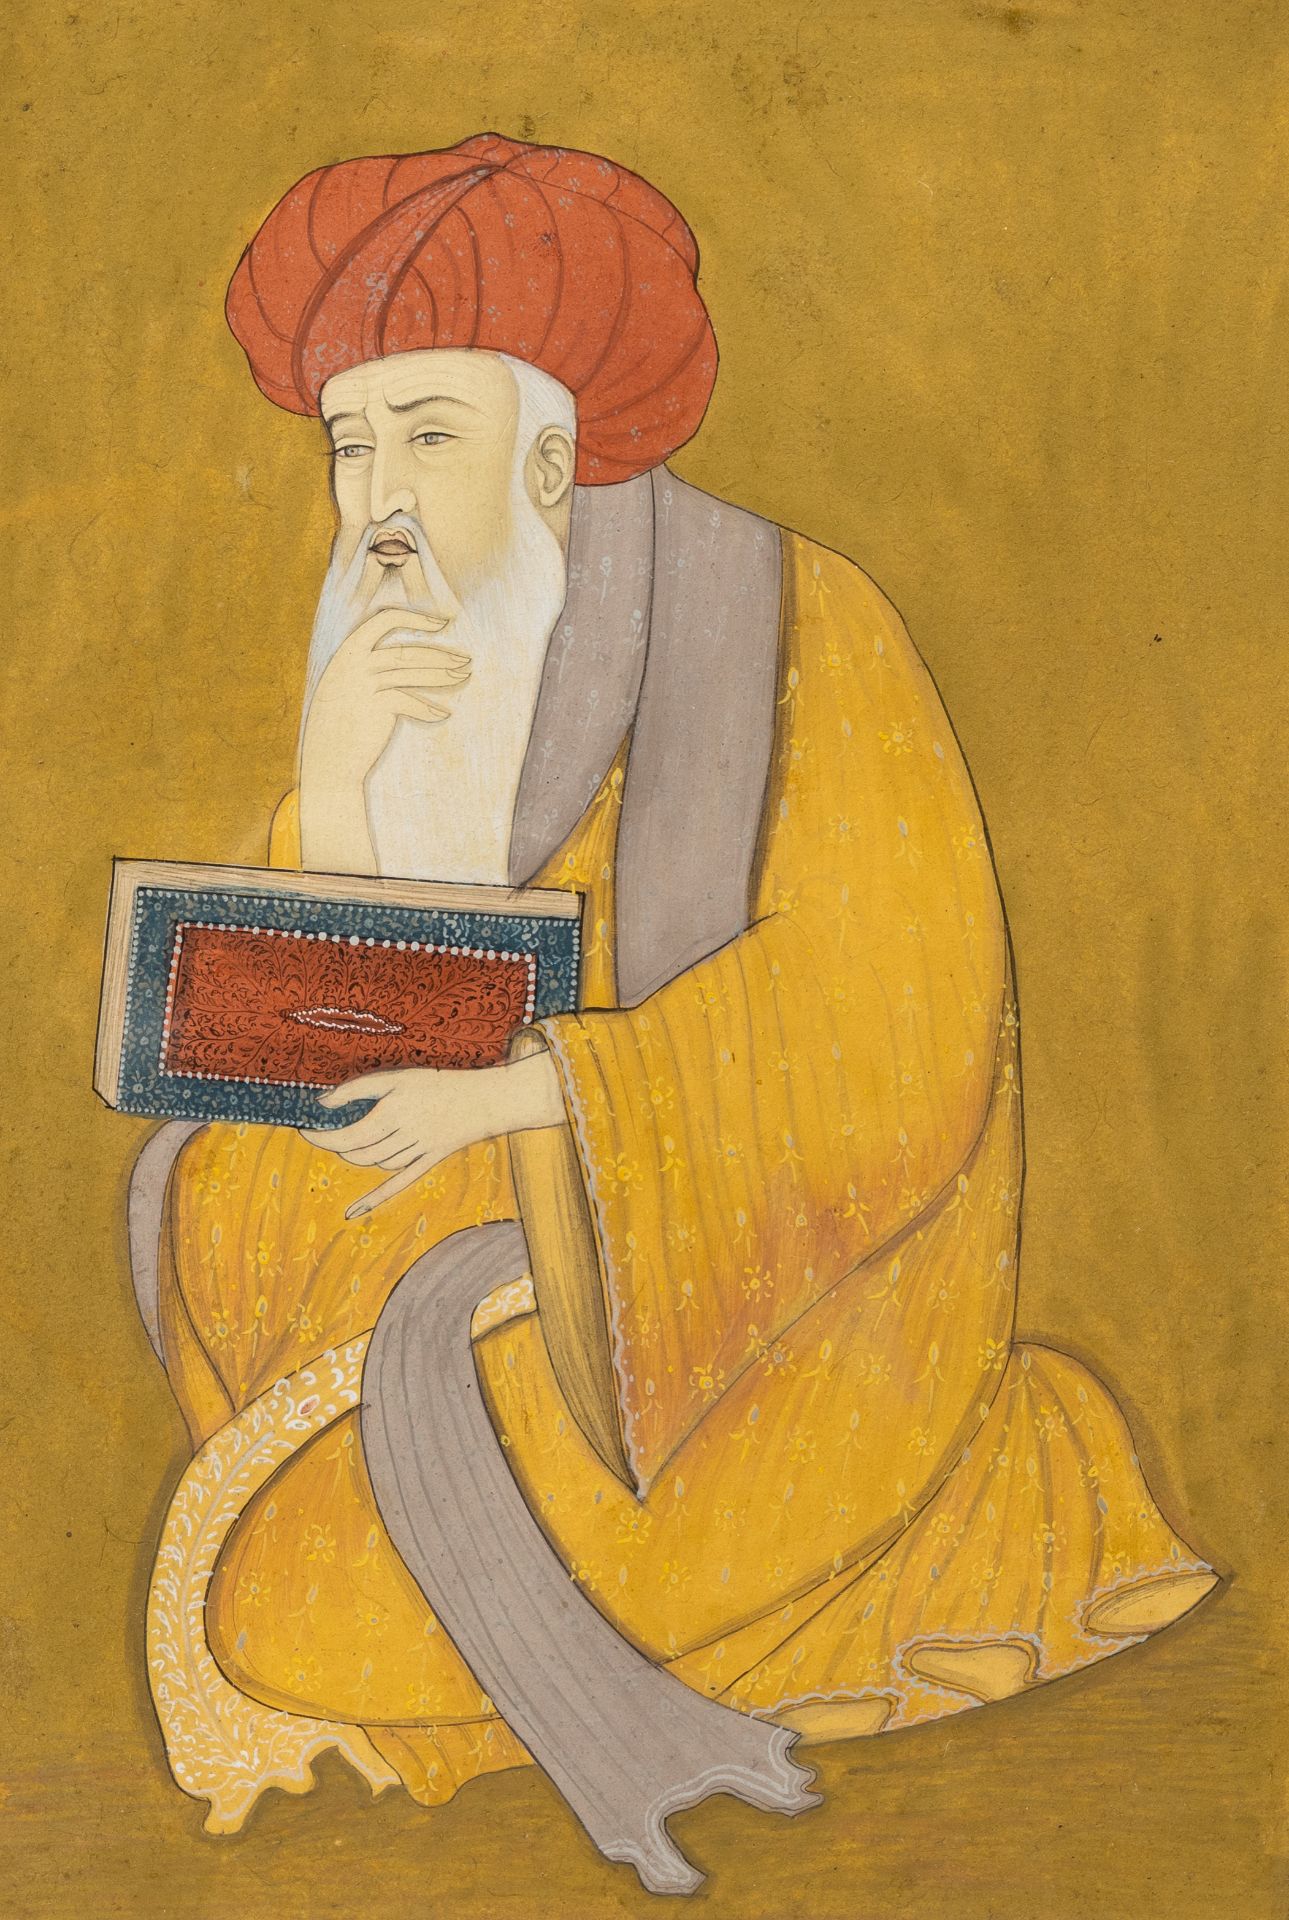 A Persian 'scribe' miniature, India, ca. 1900